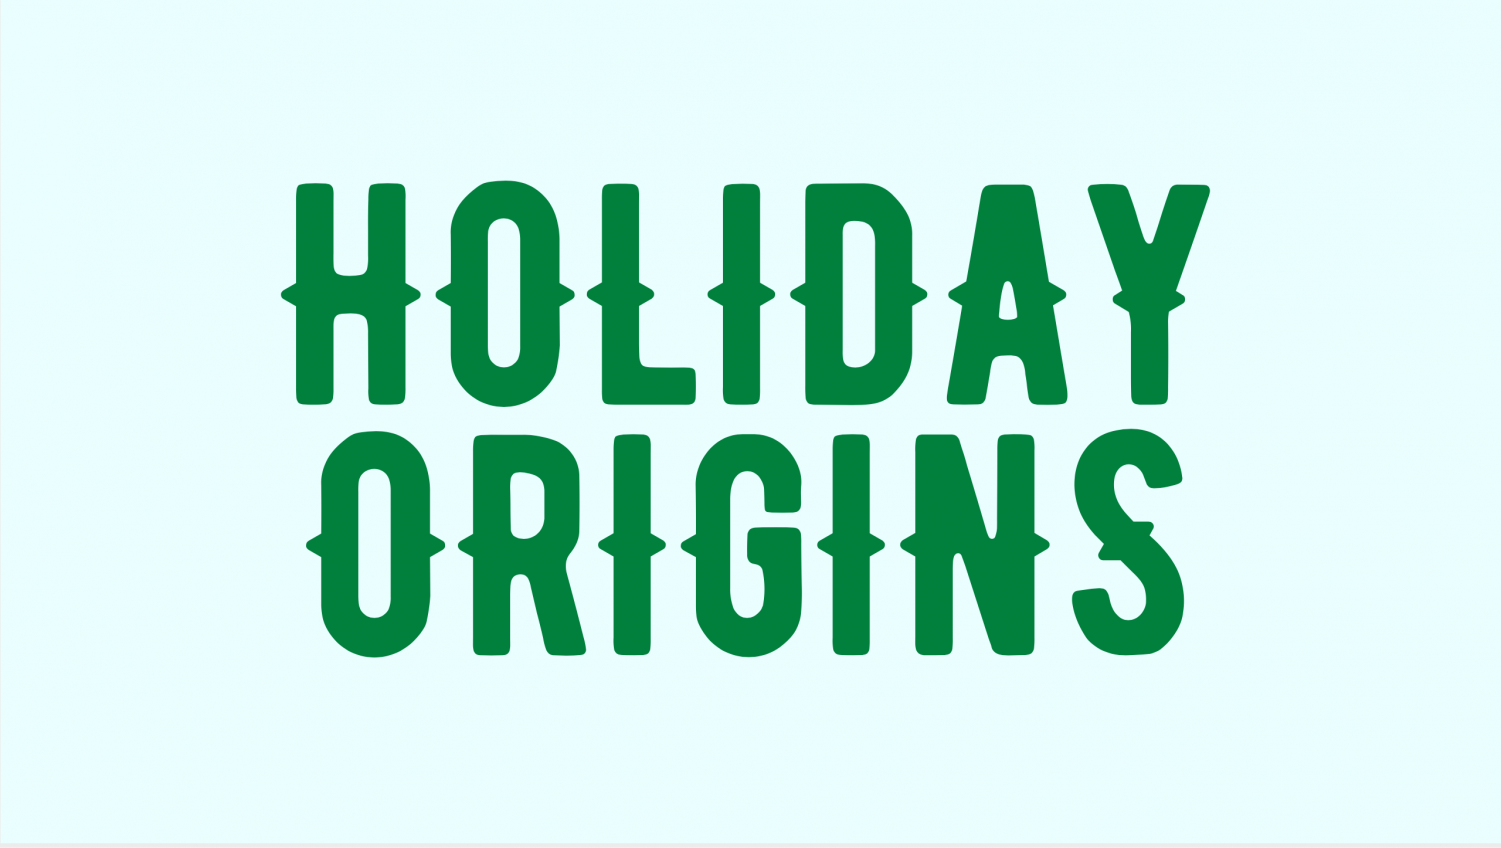 Holiday Origins